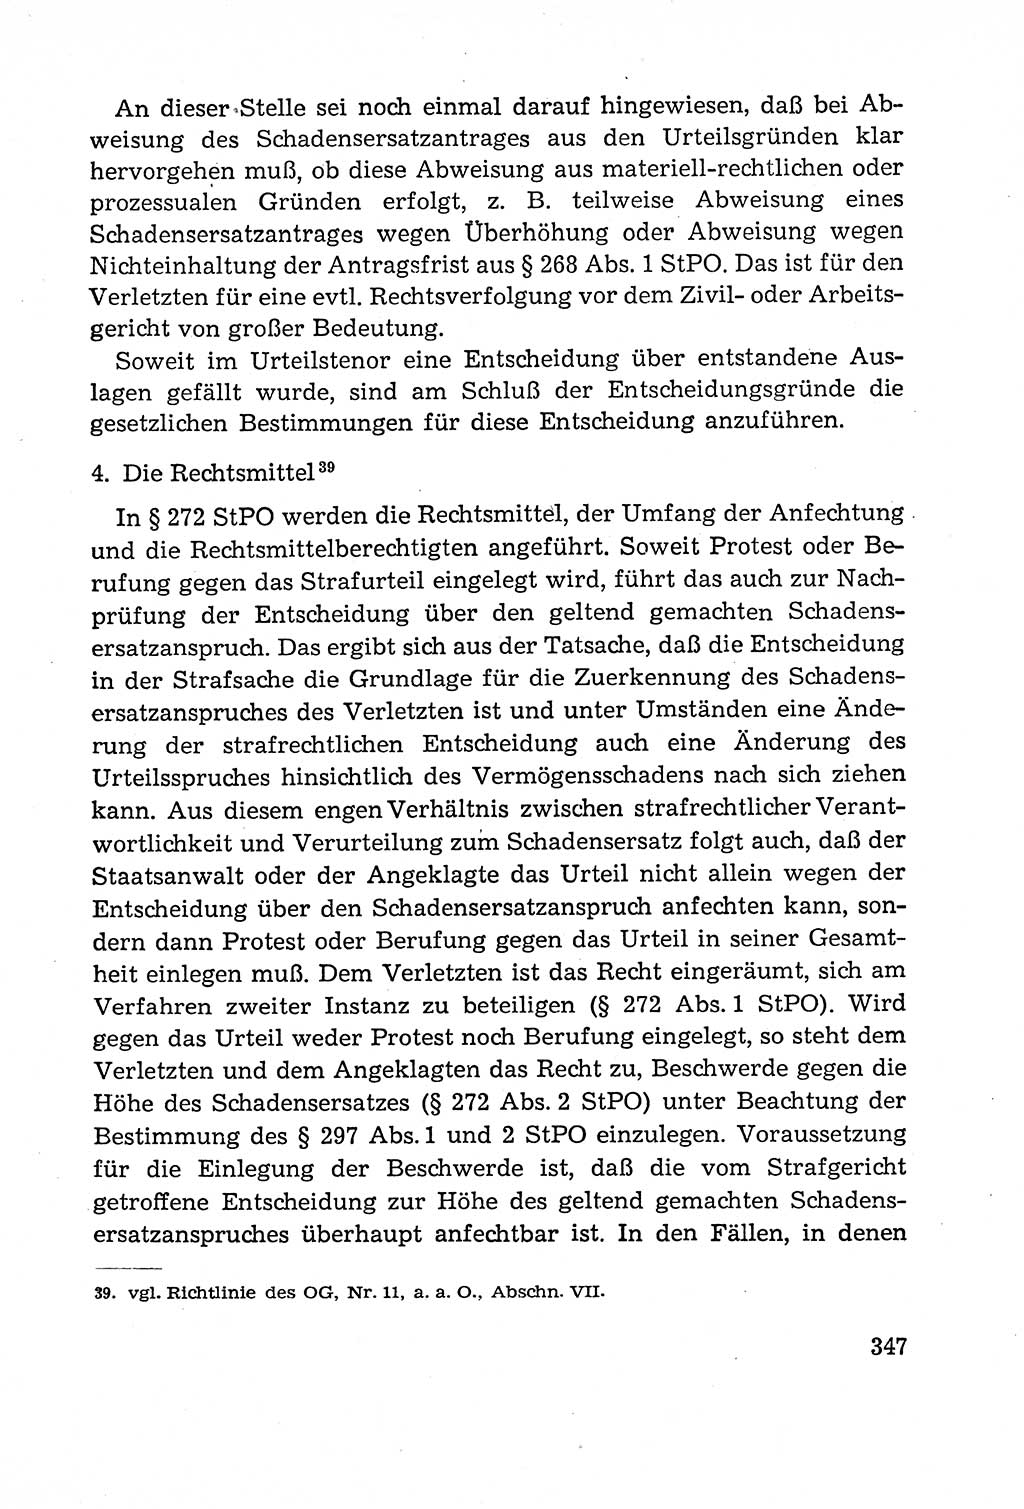 Leitfaden des Strafprozeßrechts der Deutschen Demokratischen Republik (DDR) 1959, Seite 347 (LF StPR DDR 1959, S. 347)